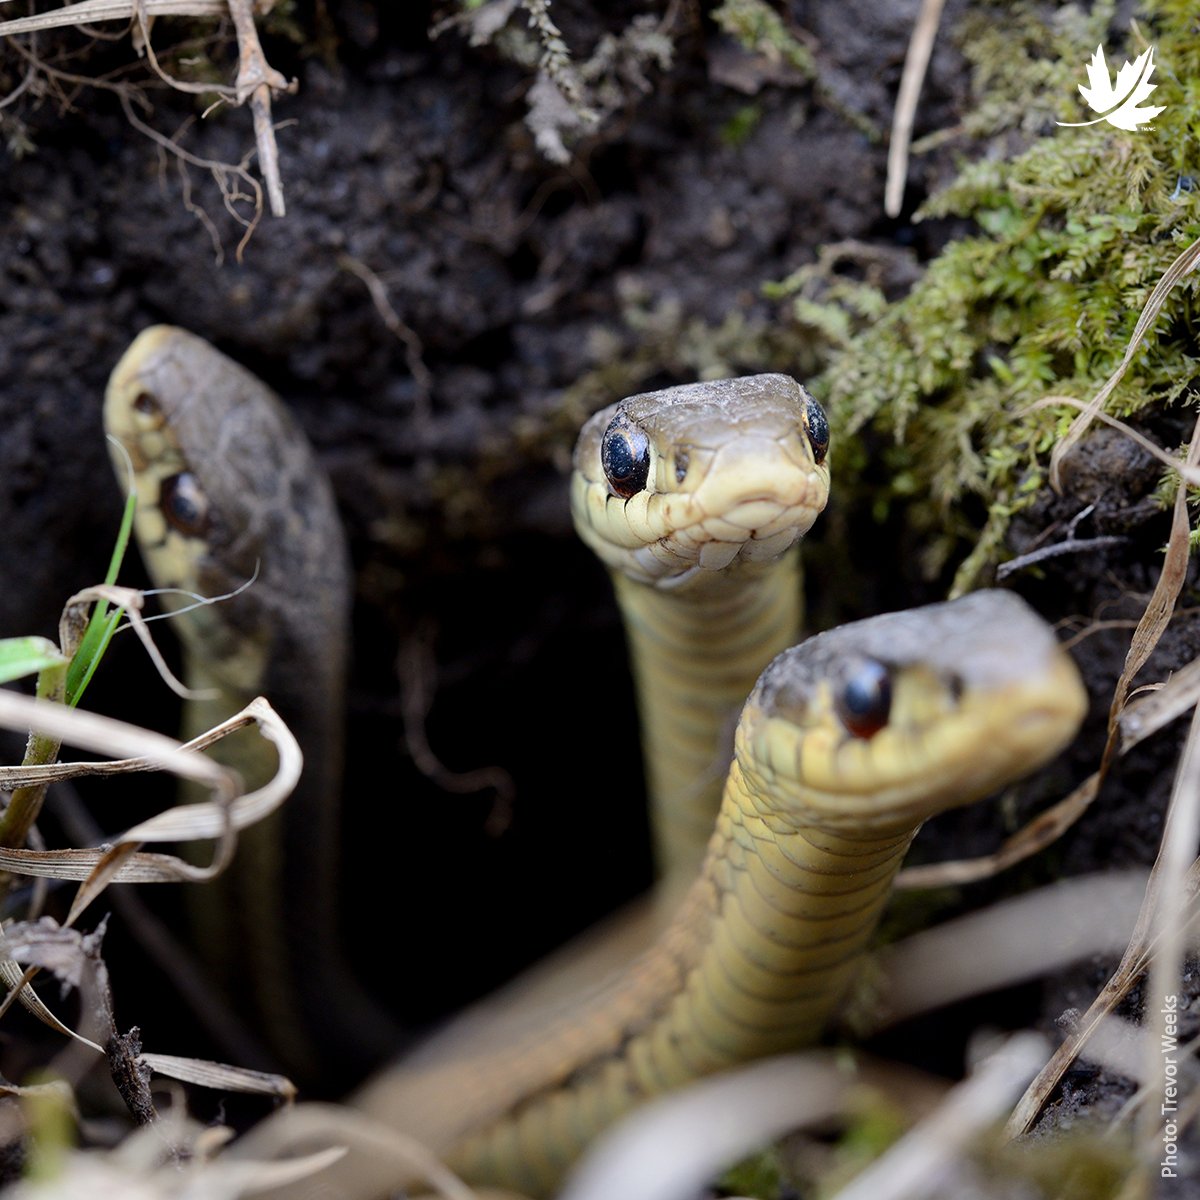 Caption this image! // Suggérez une légende pour cette photo! Photo: Eastern garter snake / La couleuvre rayée de l’Est; 📸: Trevor Weeks